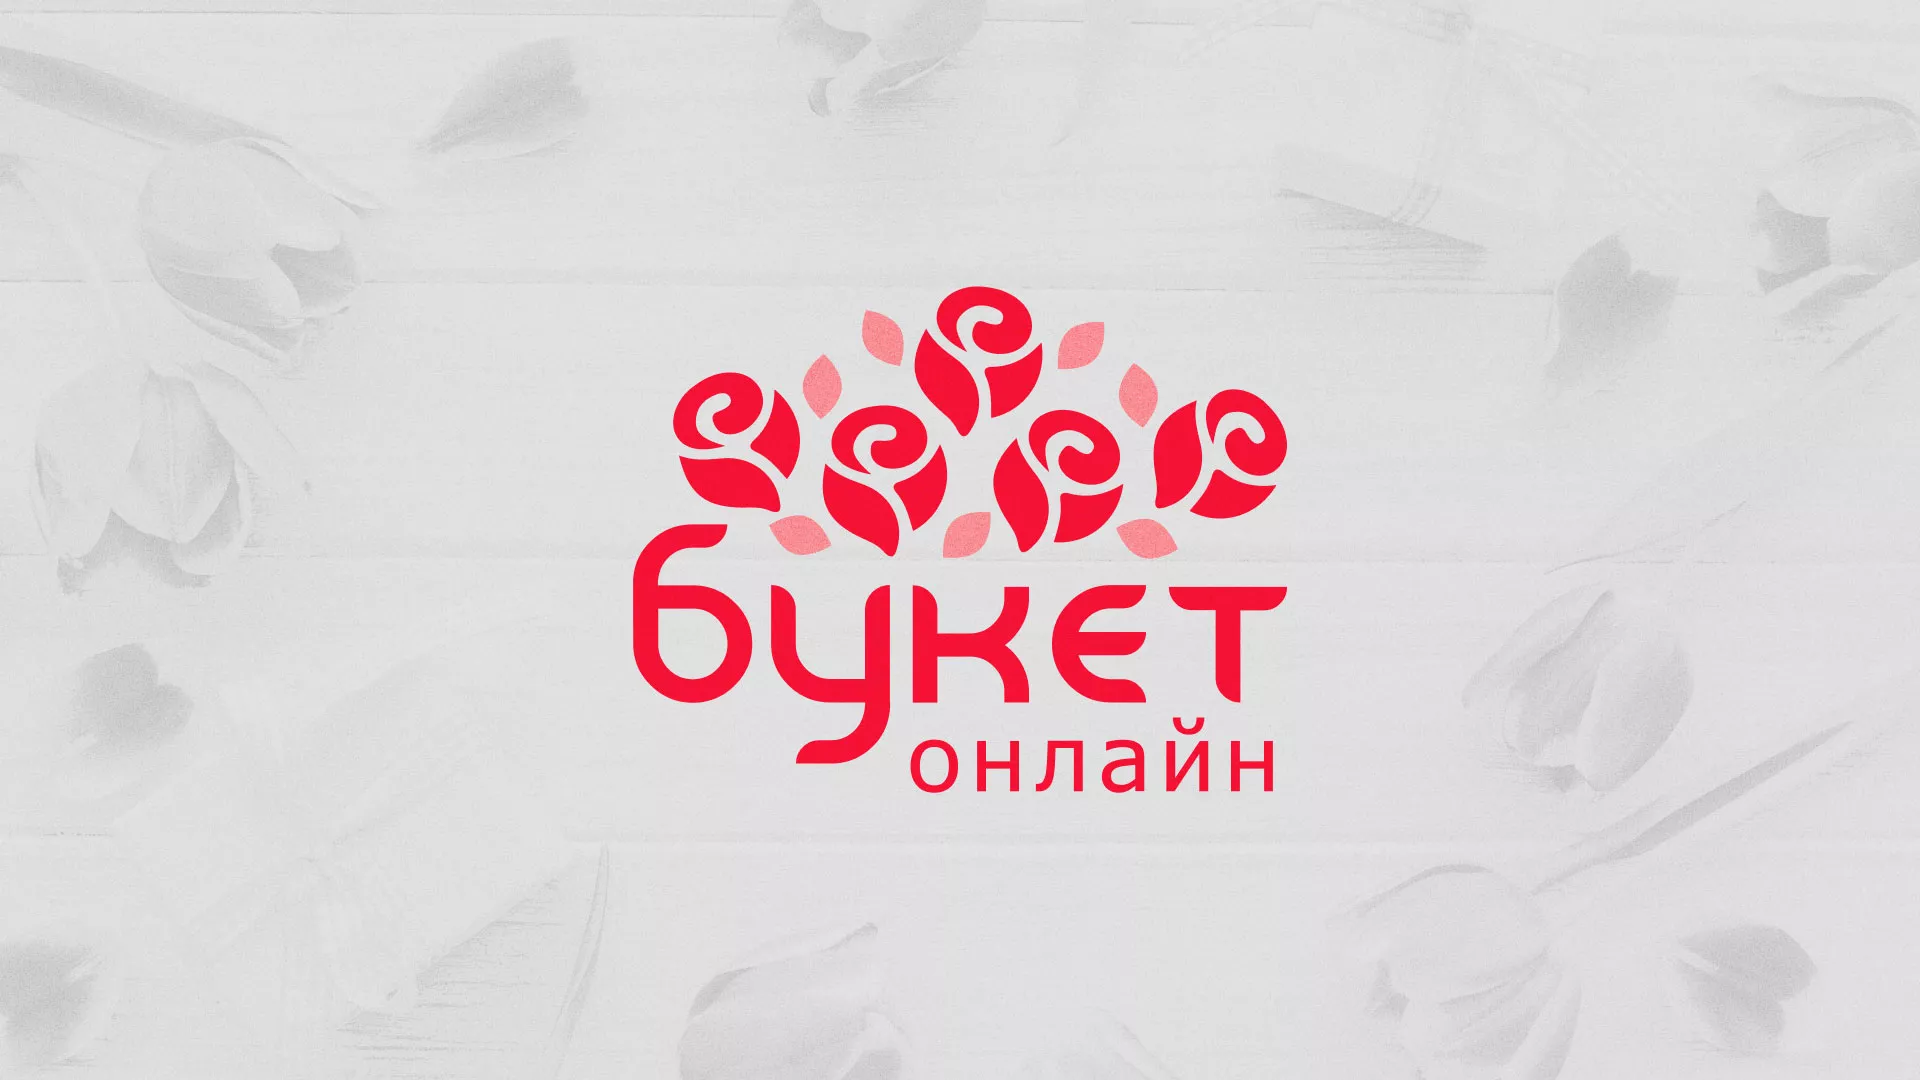 Создание интернет-магазина «Букет-онлайн» по цветам в Весьегонске